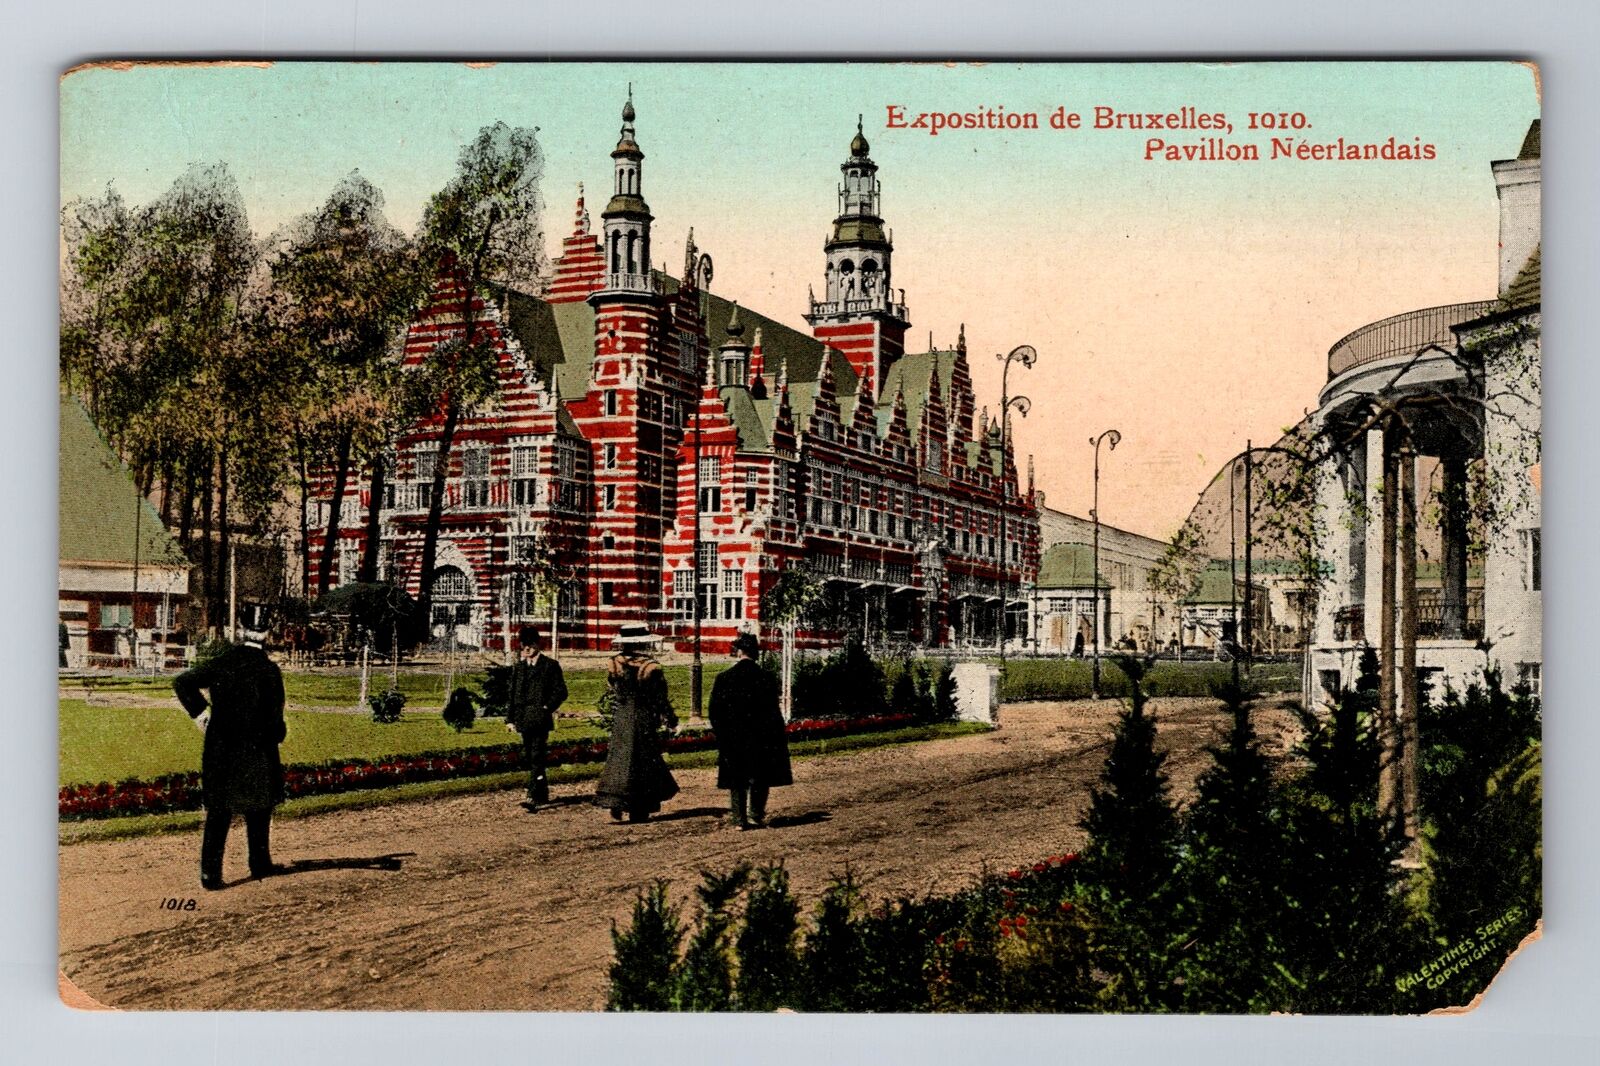 France-Brussels Exhibition 1910 Dutch Pavilion, Antique, Vintage Postcard